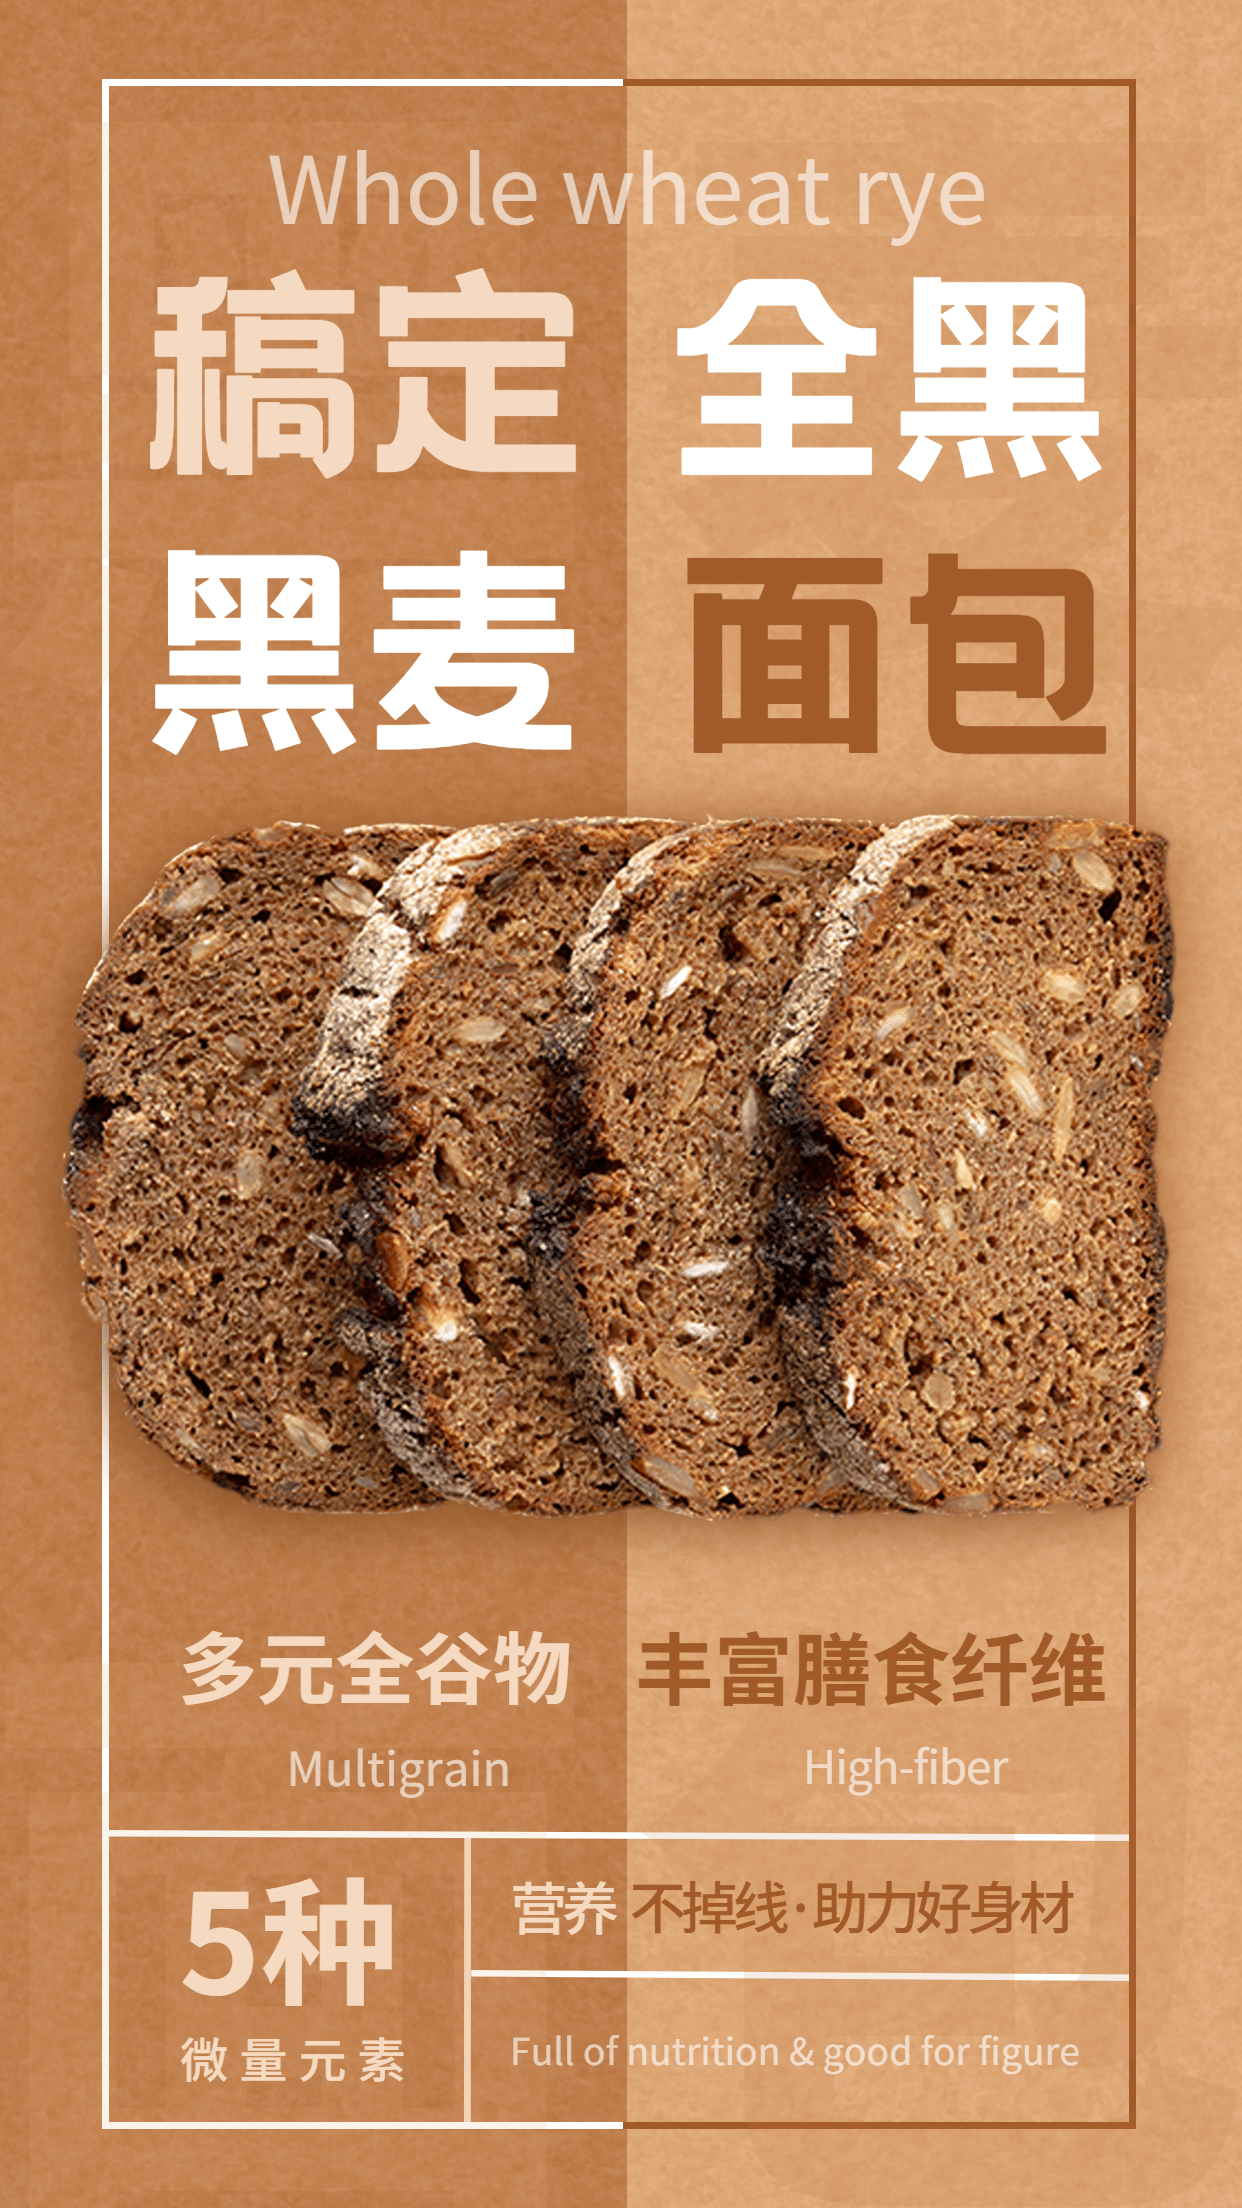 减肥瘦身产品介绍产品展示黑麦面包